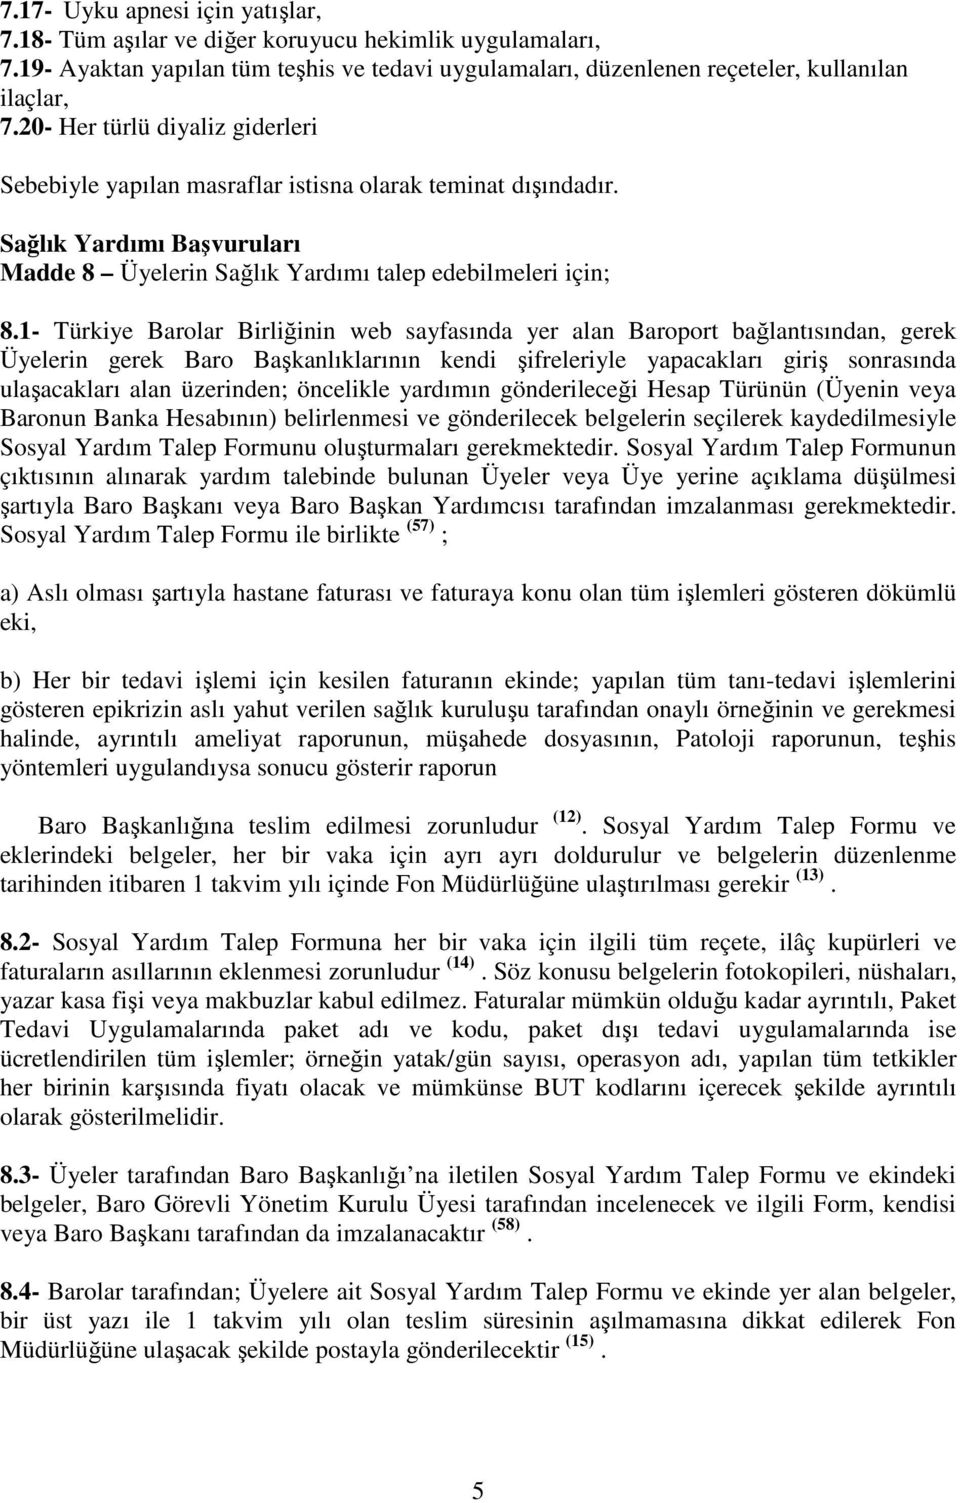 1- Türkiye Barolar Birliğinin web sayfasında yer alan Baroport bağlantısından, gerek Üyelerin gerek Baro Başkanlıklarının kendi şifreleriyle yapacakları giriş sonrasında ulaşacakları alan üzerinden;